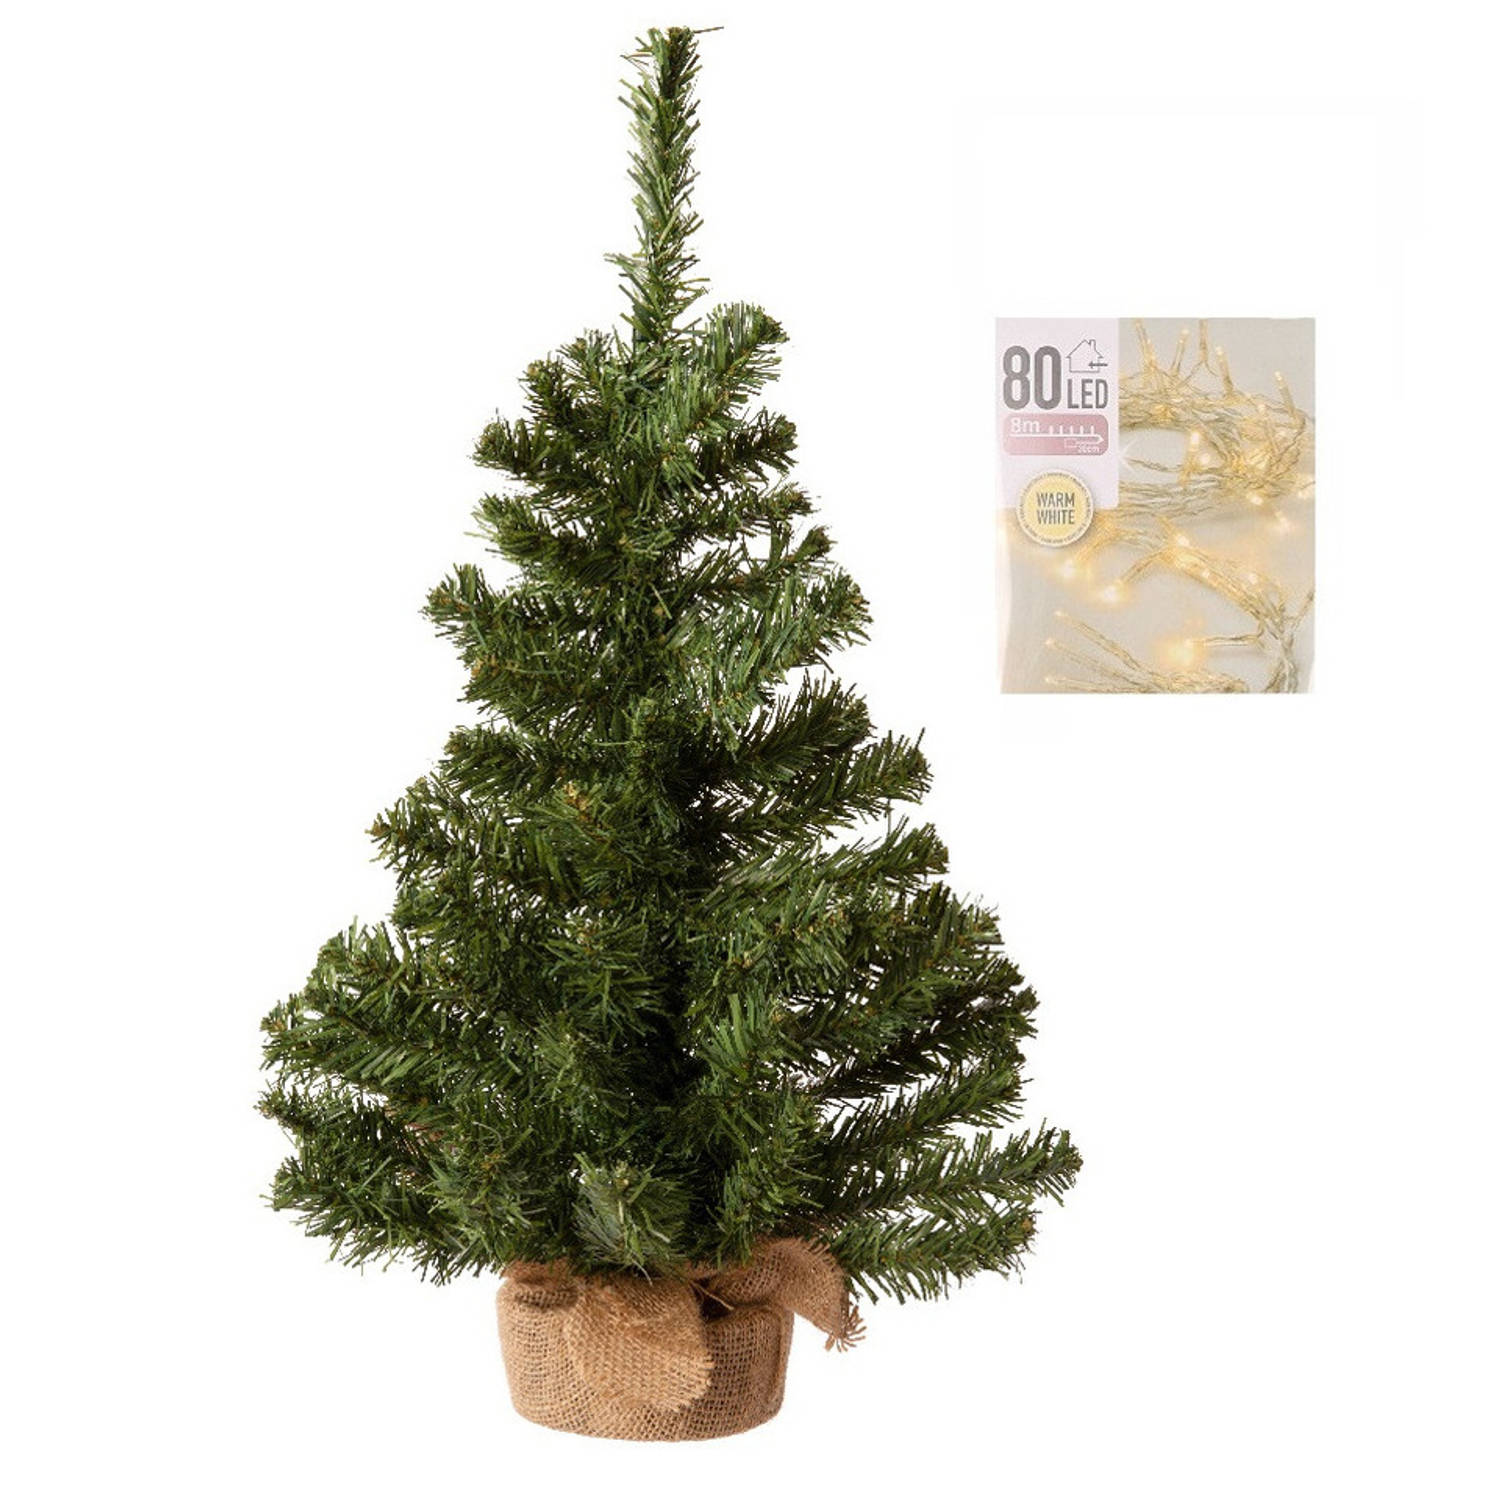 niet voldoende Oswald maak het plat Volle kerstboom in jute zak 60 cm inclusief warm witte kerstverlichting -  Kunstkerstboom | Blokker